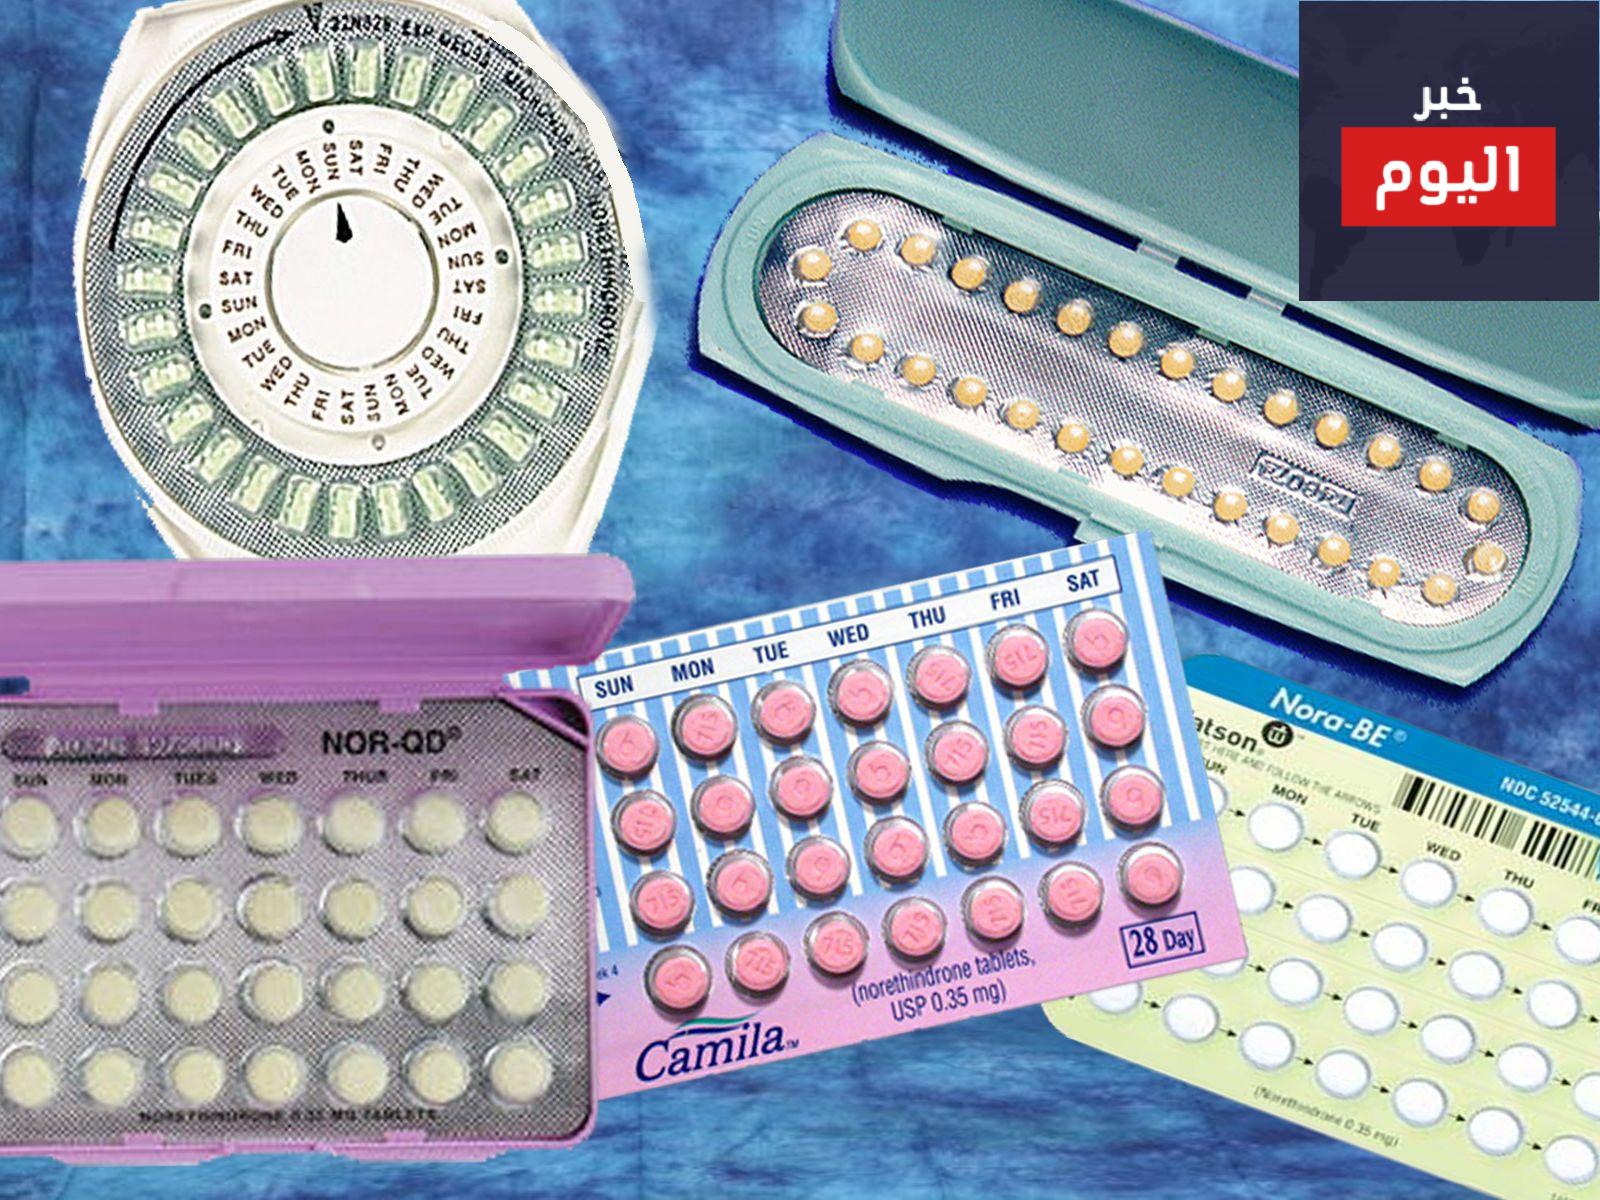 حبوب منع الحمل البروجستوجينية - The Progestogen-Only pill